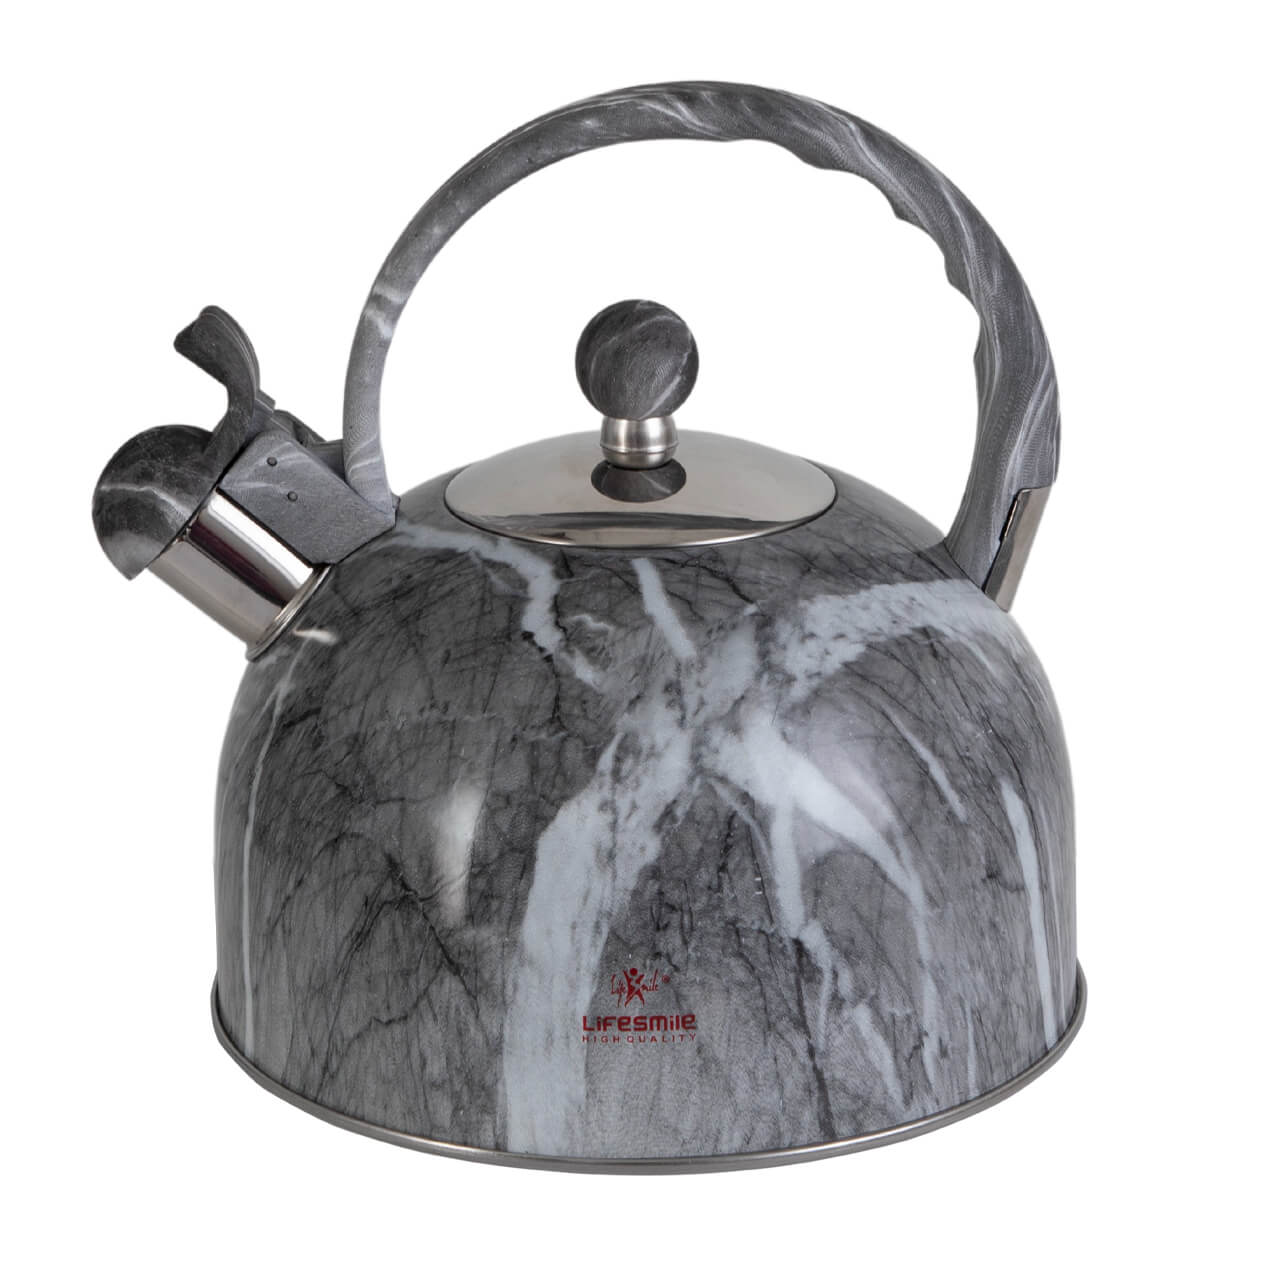 Enamel Coated kettle чайник tk-505 2.5л синий. Чайники лайф Смайл. Чайники лайф Смайл материалы. Life smile High quality чайник цена. Чайник переходный возраст